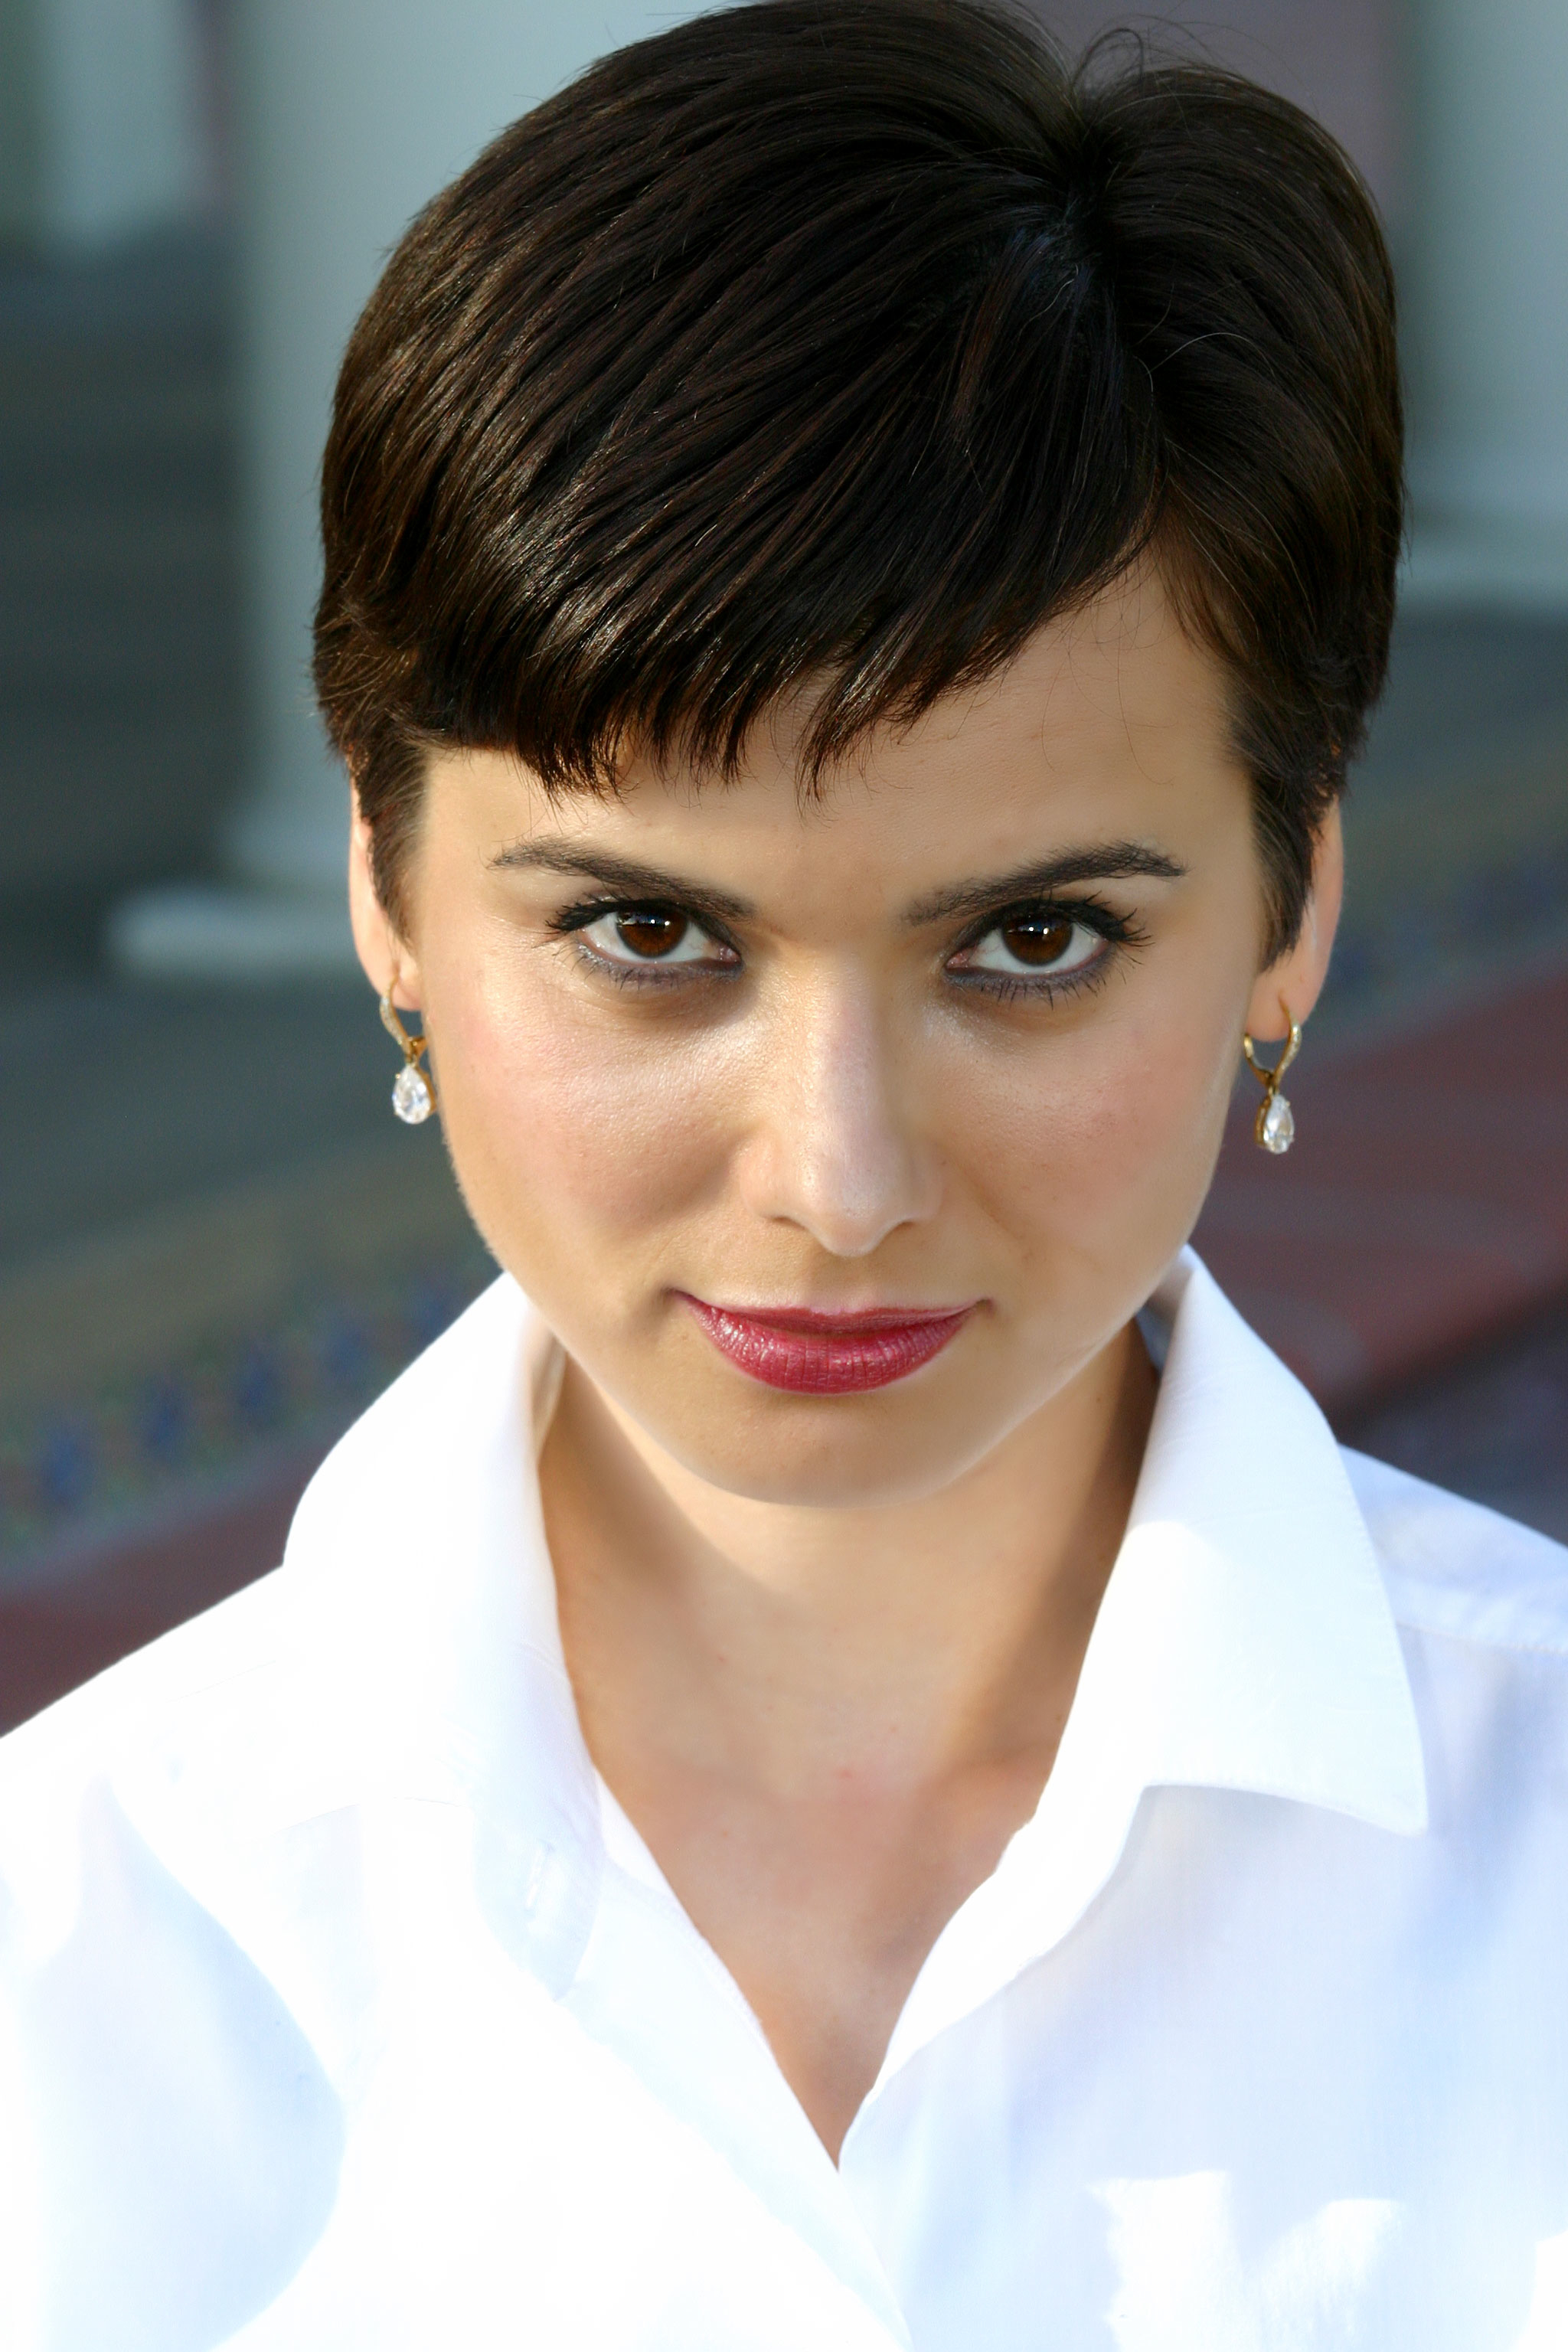 Natalia Gorelova